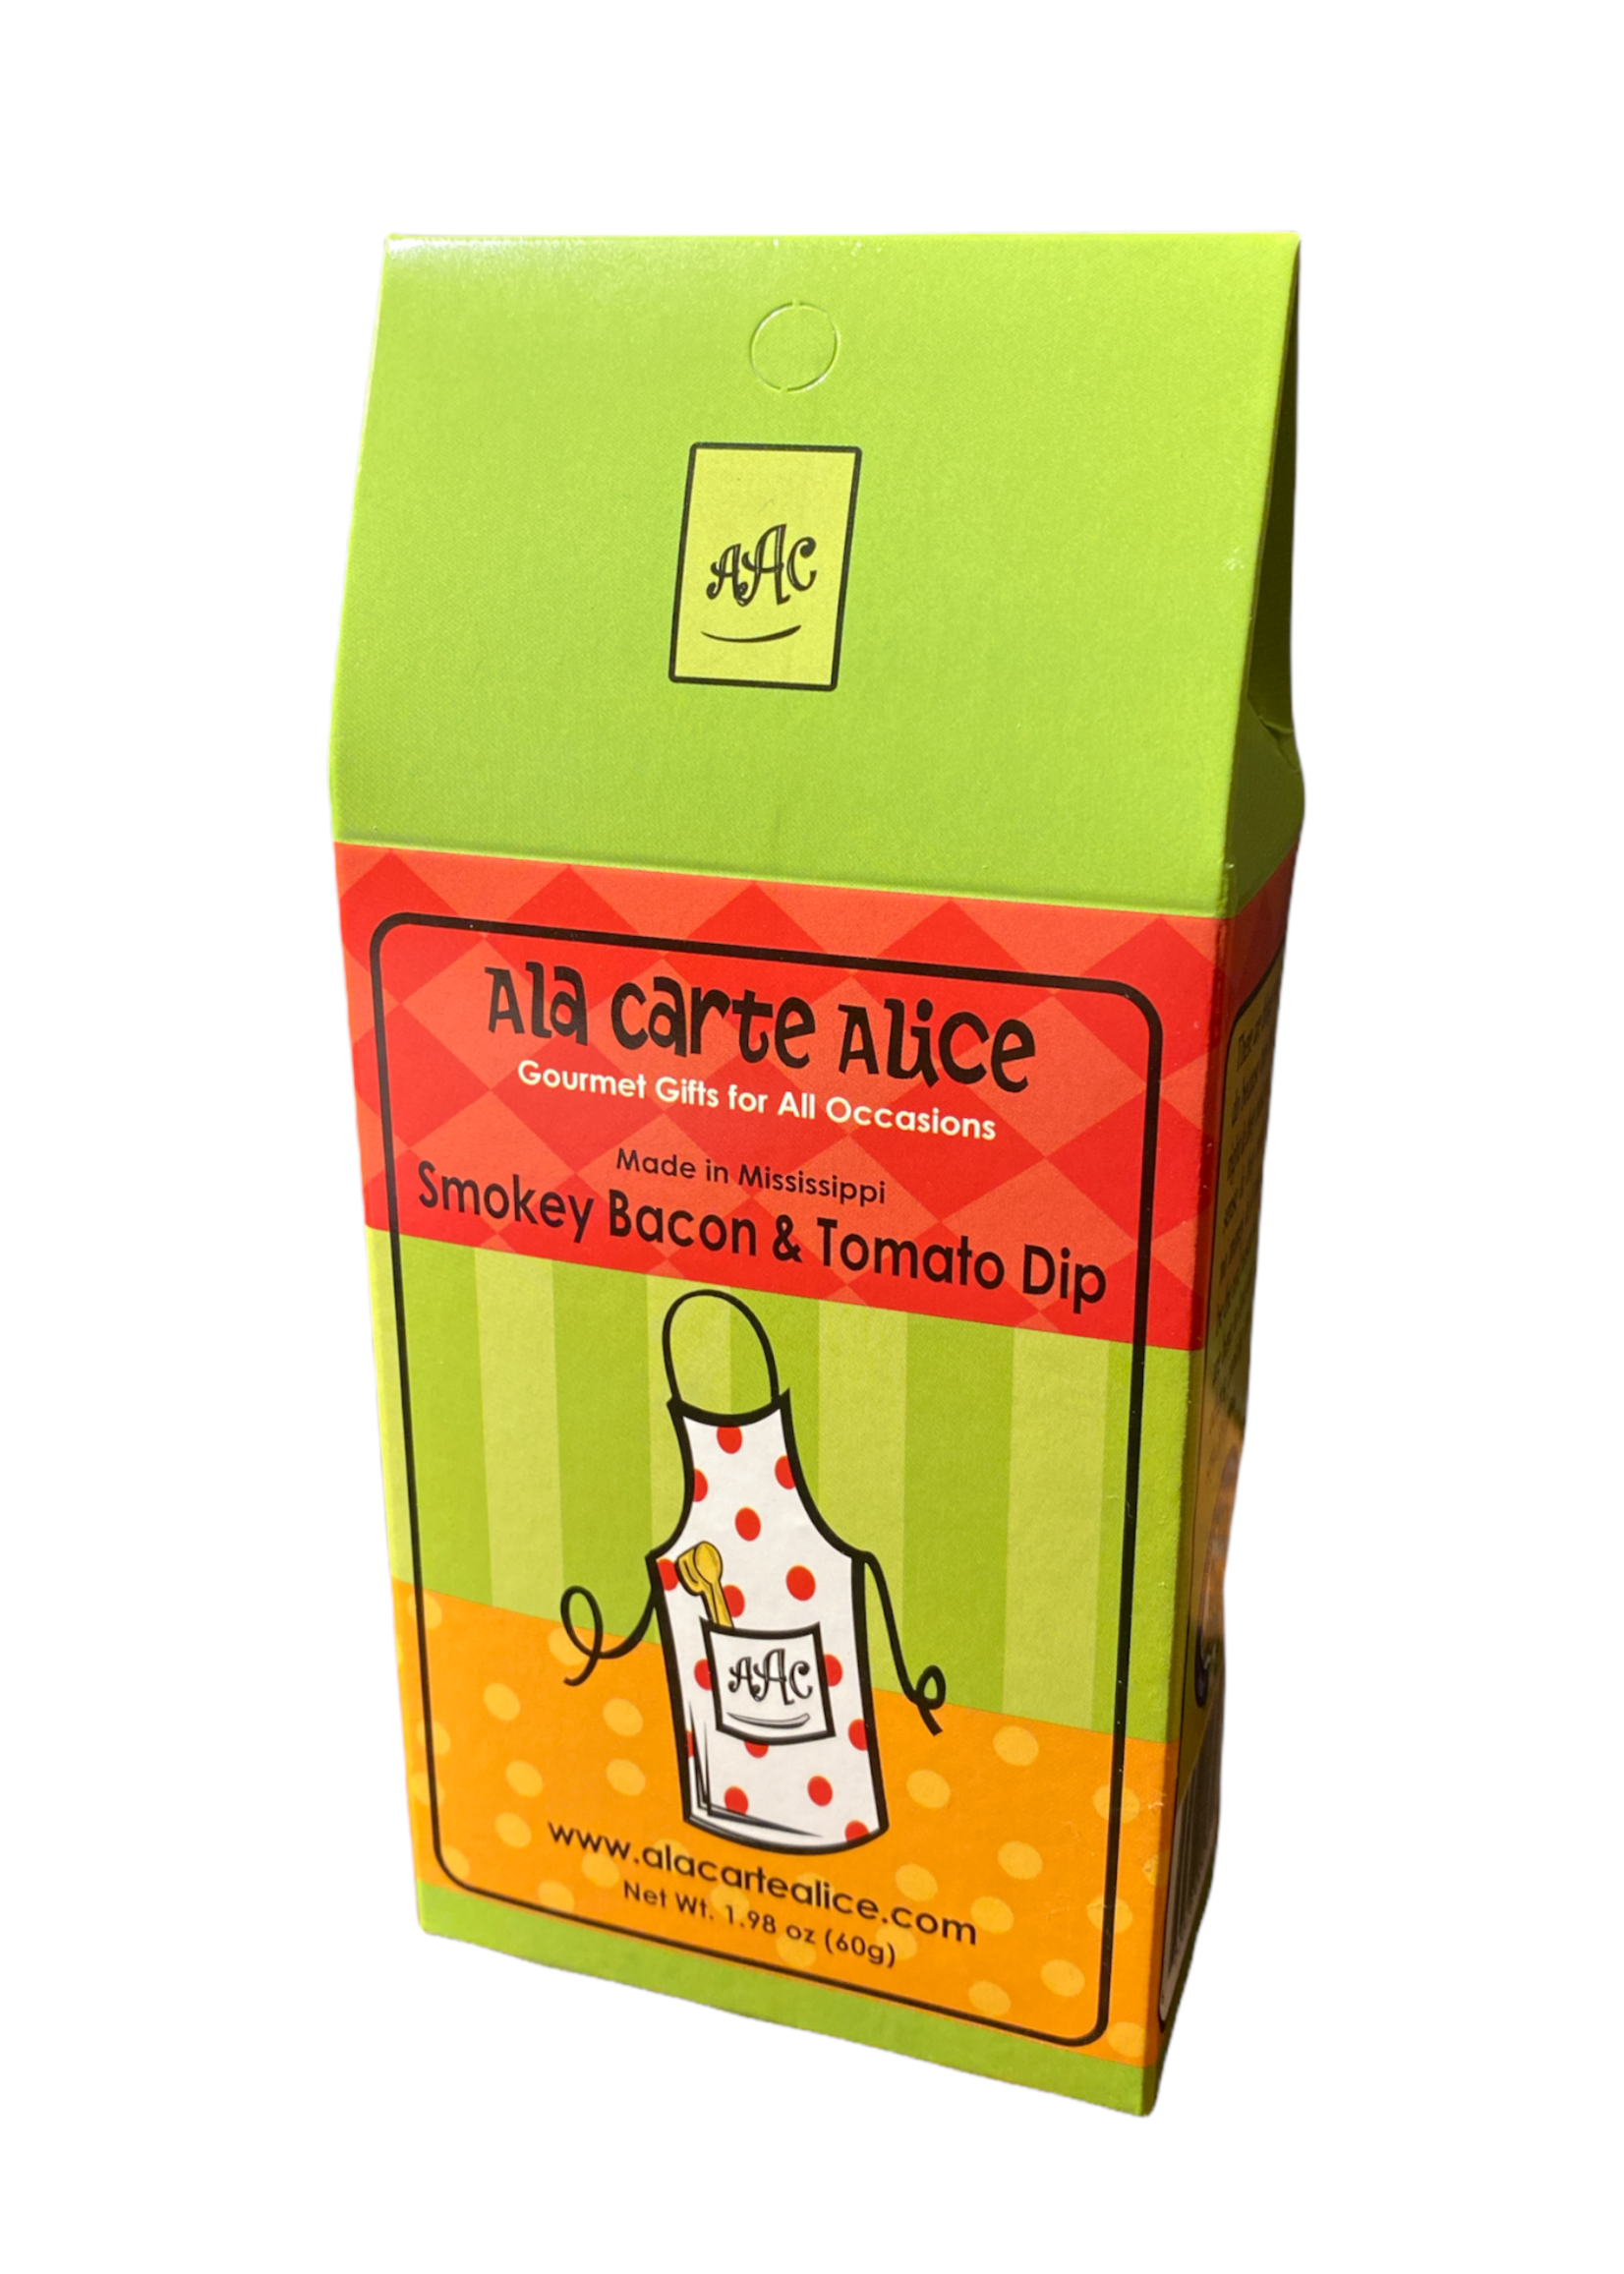 Ala Carte Alice Smokey Bacon & Tomato Dip Mix